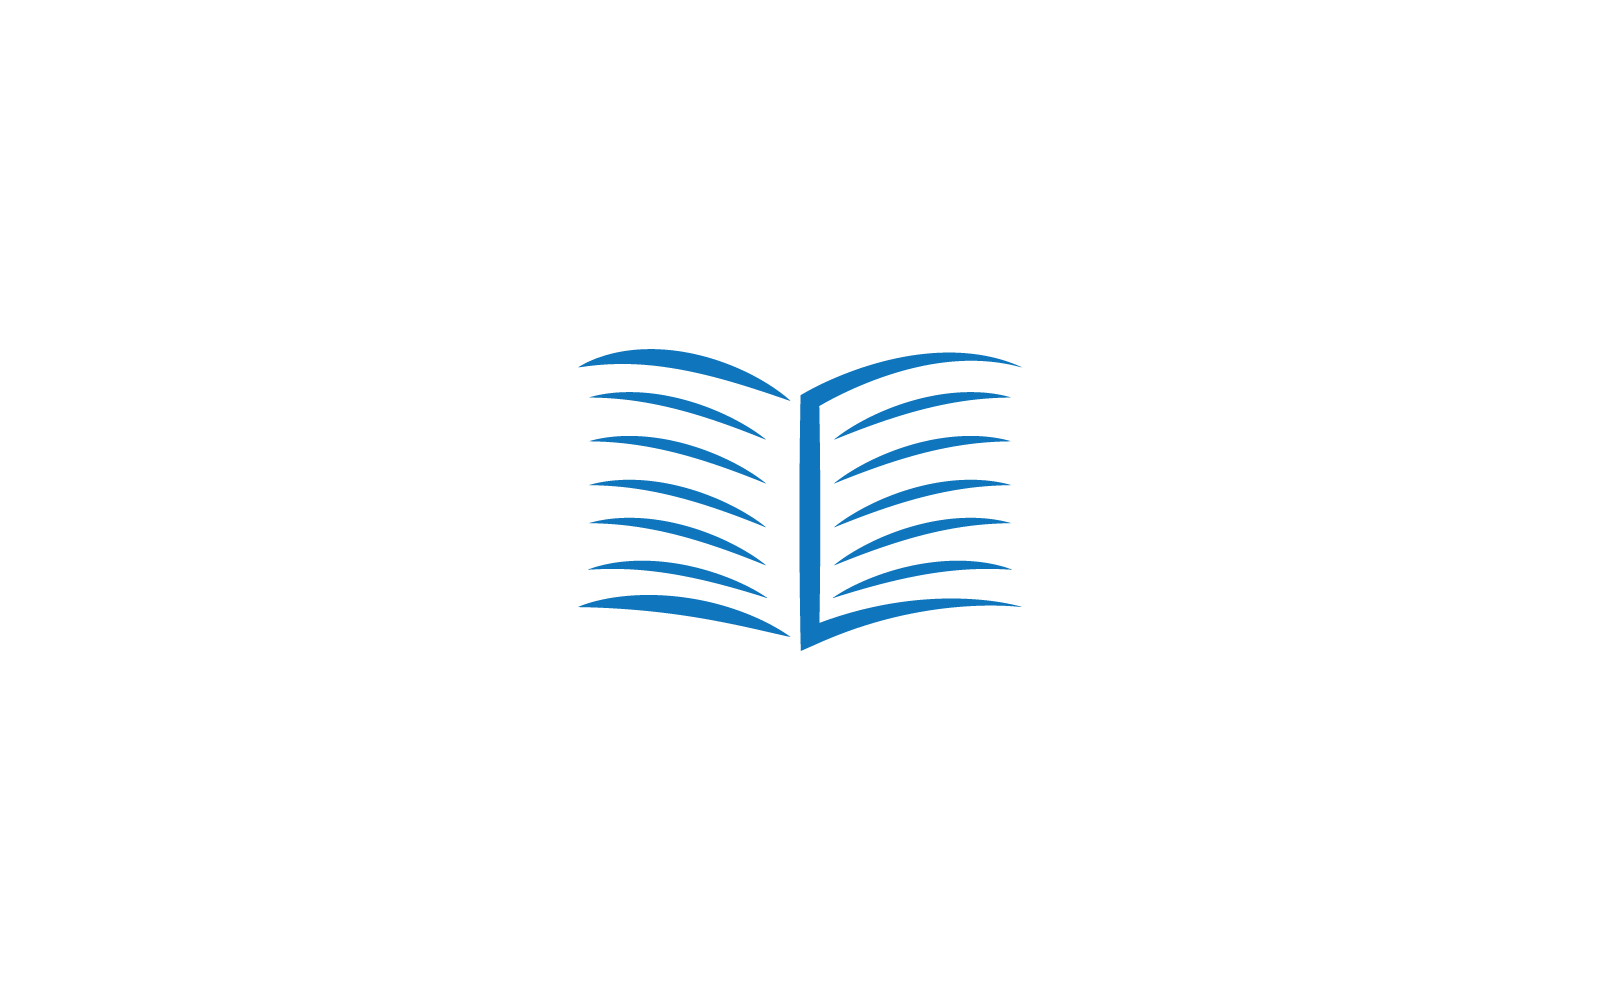 Book education logo vector design template